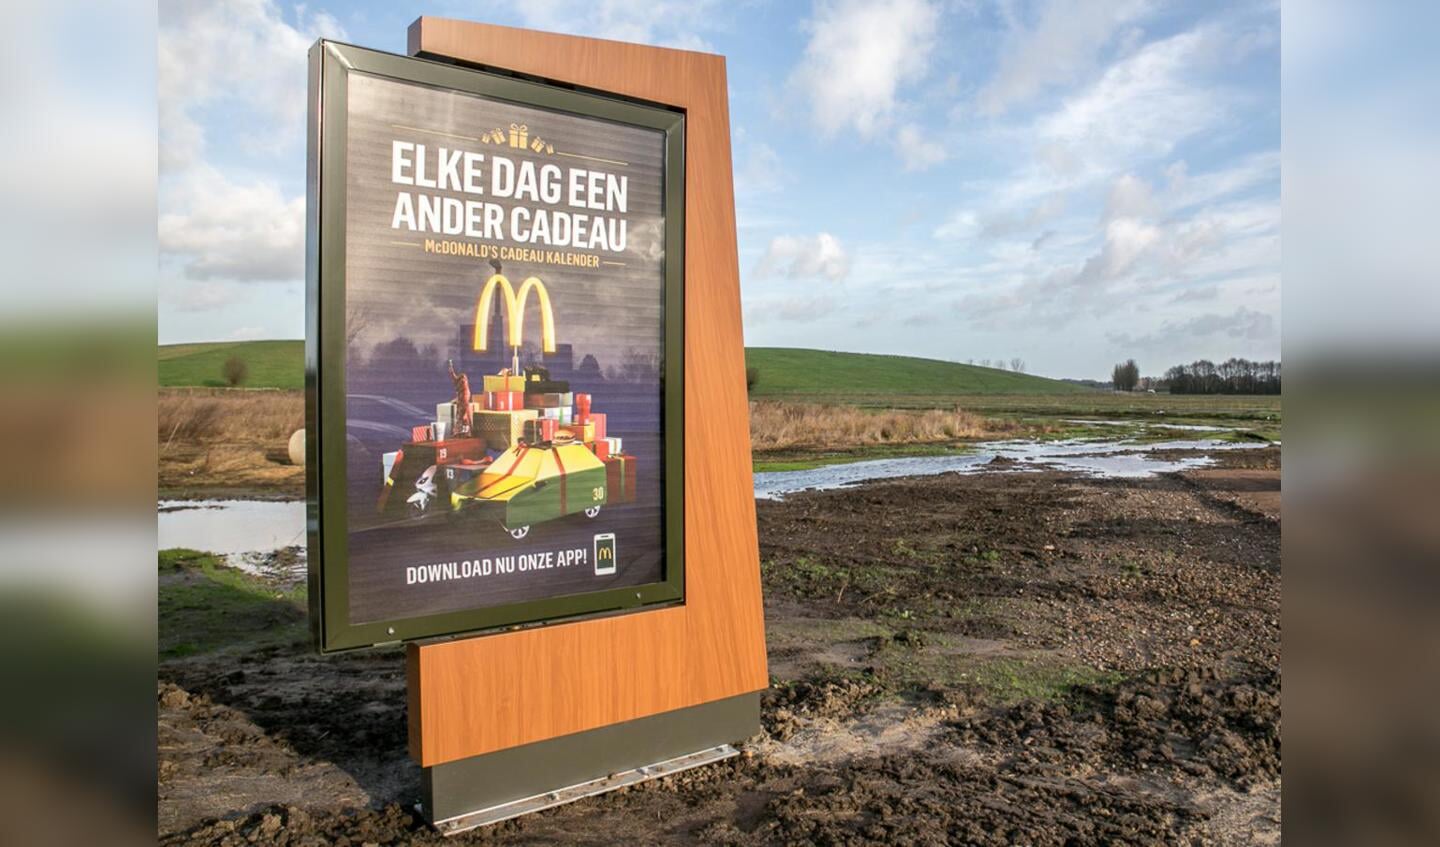 McDonald's Bavelseberg Breepark opent 2 januari om 12.00 uur. Het is de vierde McDonald's in Breda.